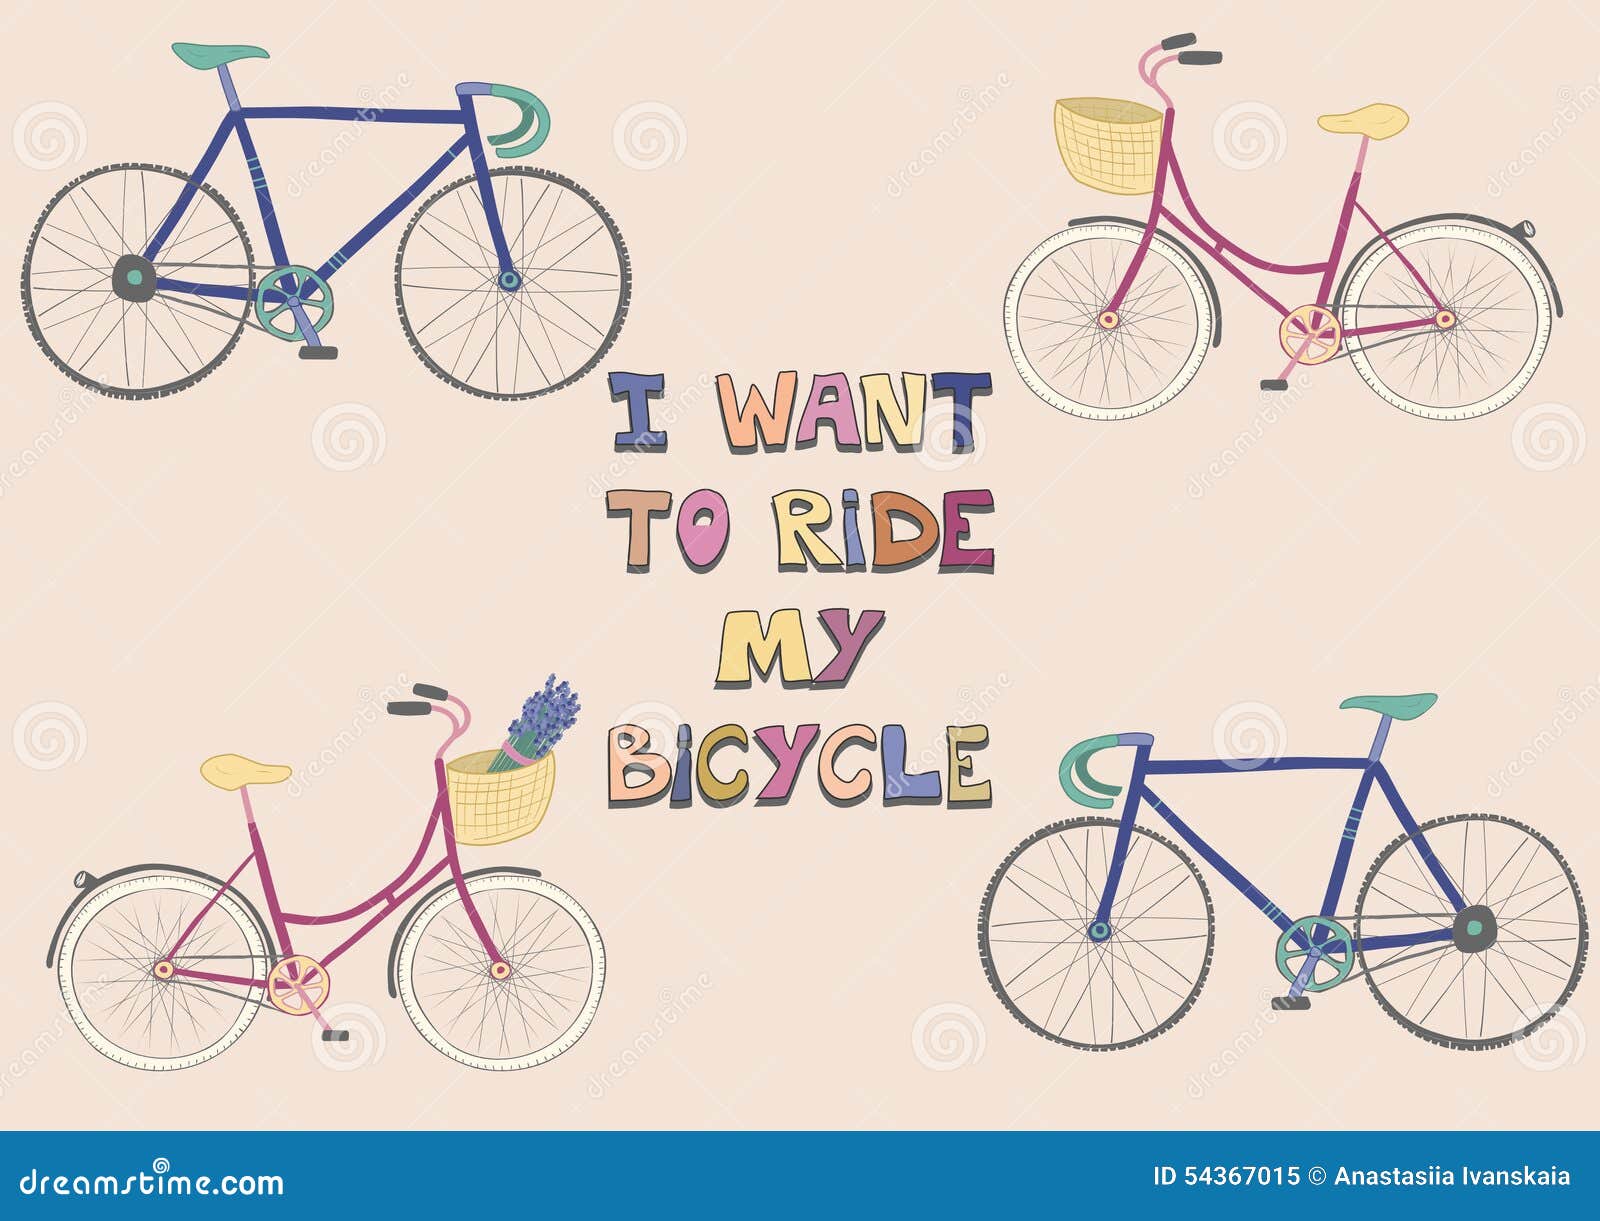 Плакат Bicycle Race. I want to Ride my Bicycle. Плакат i want to Ride. I want to Ride my Bicycle стихотворение.